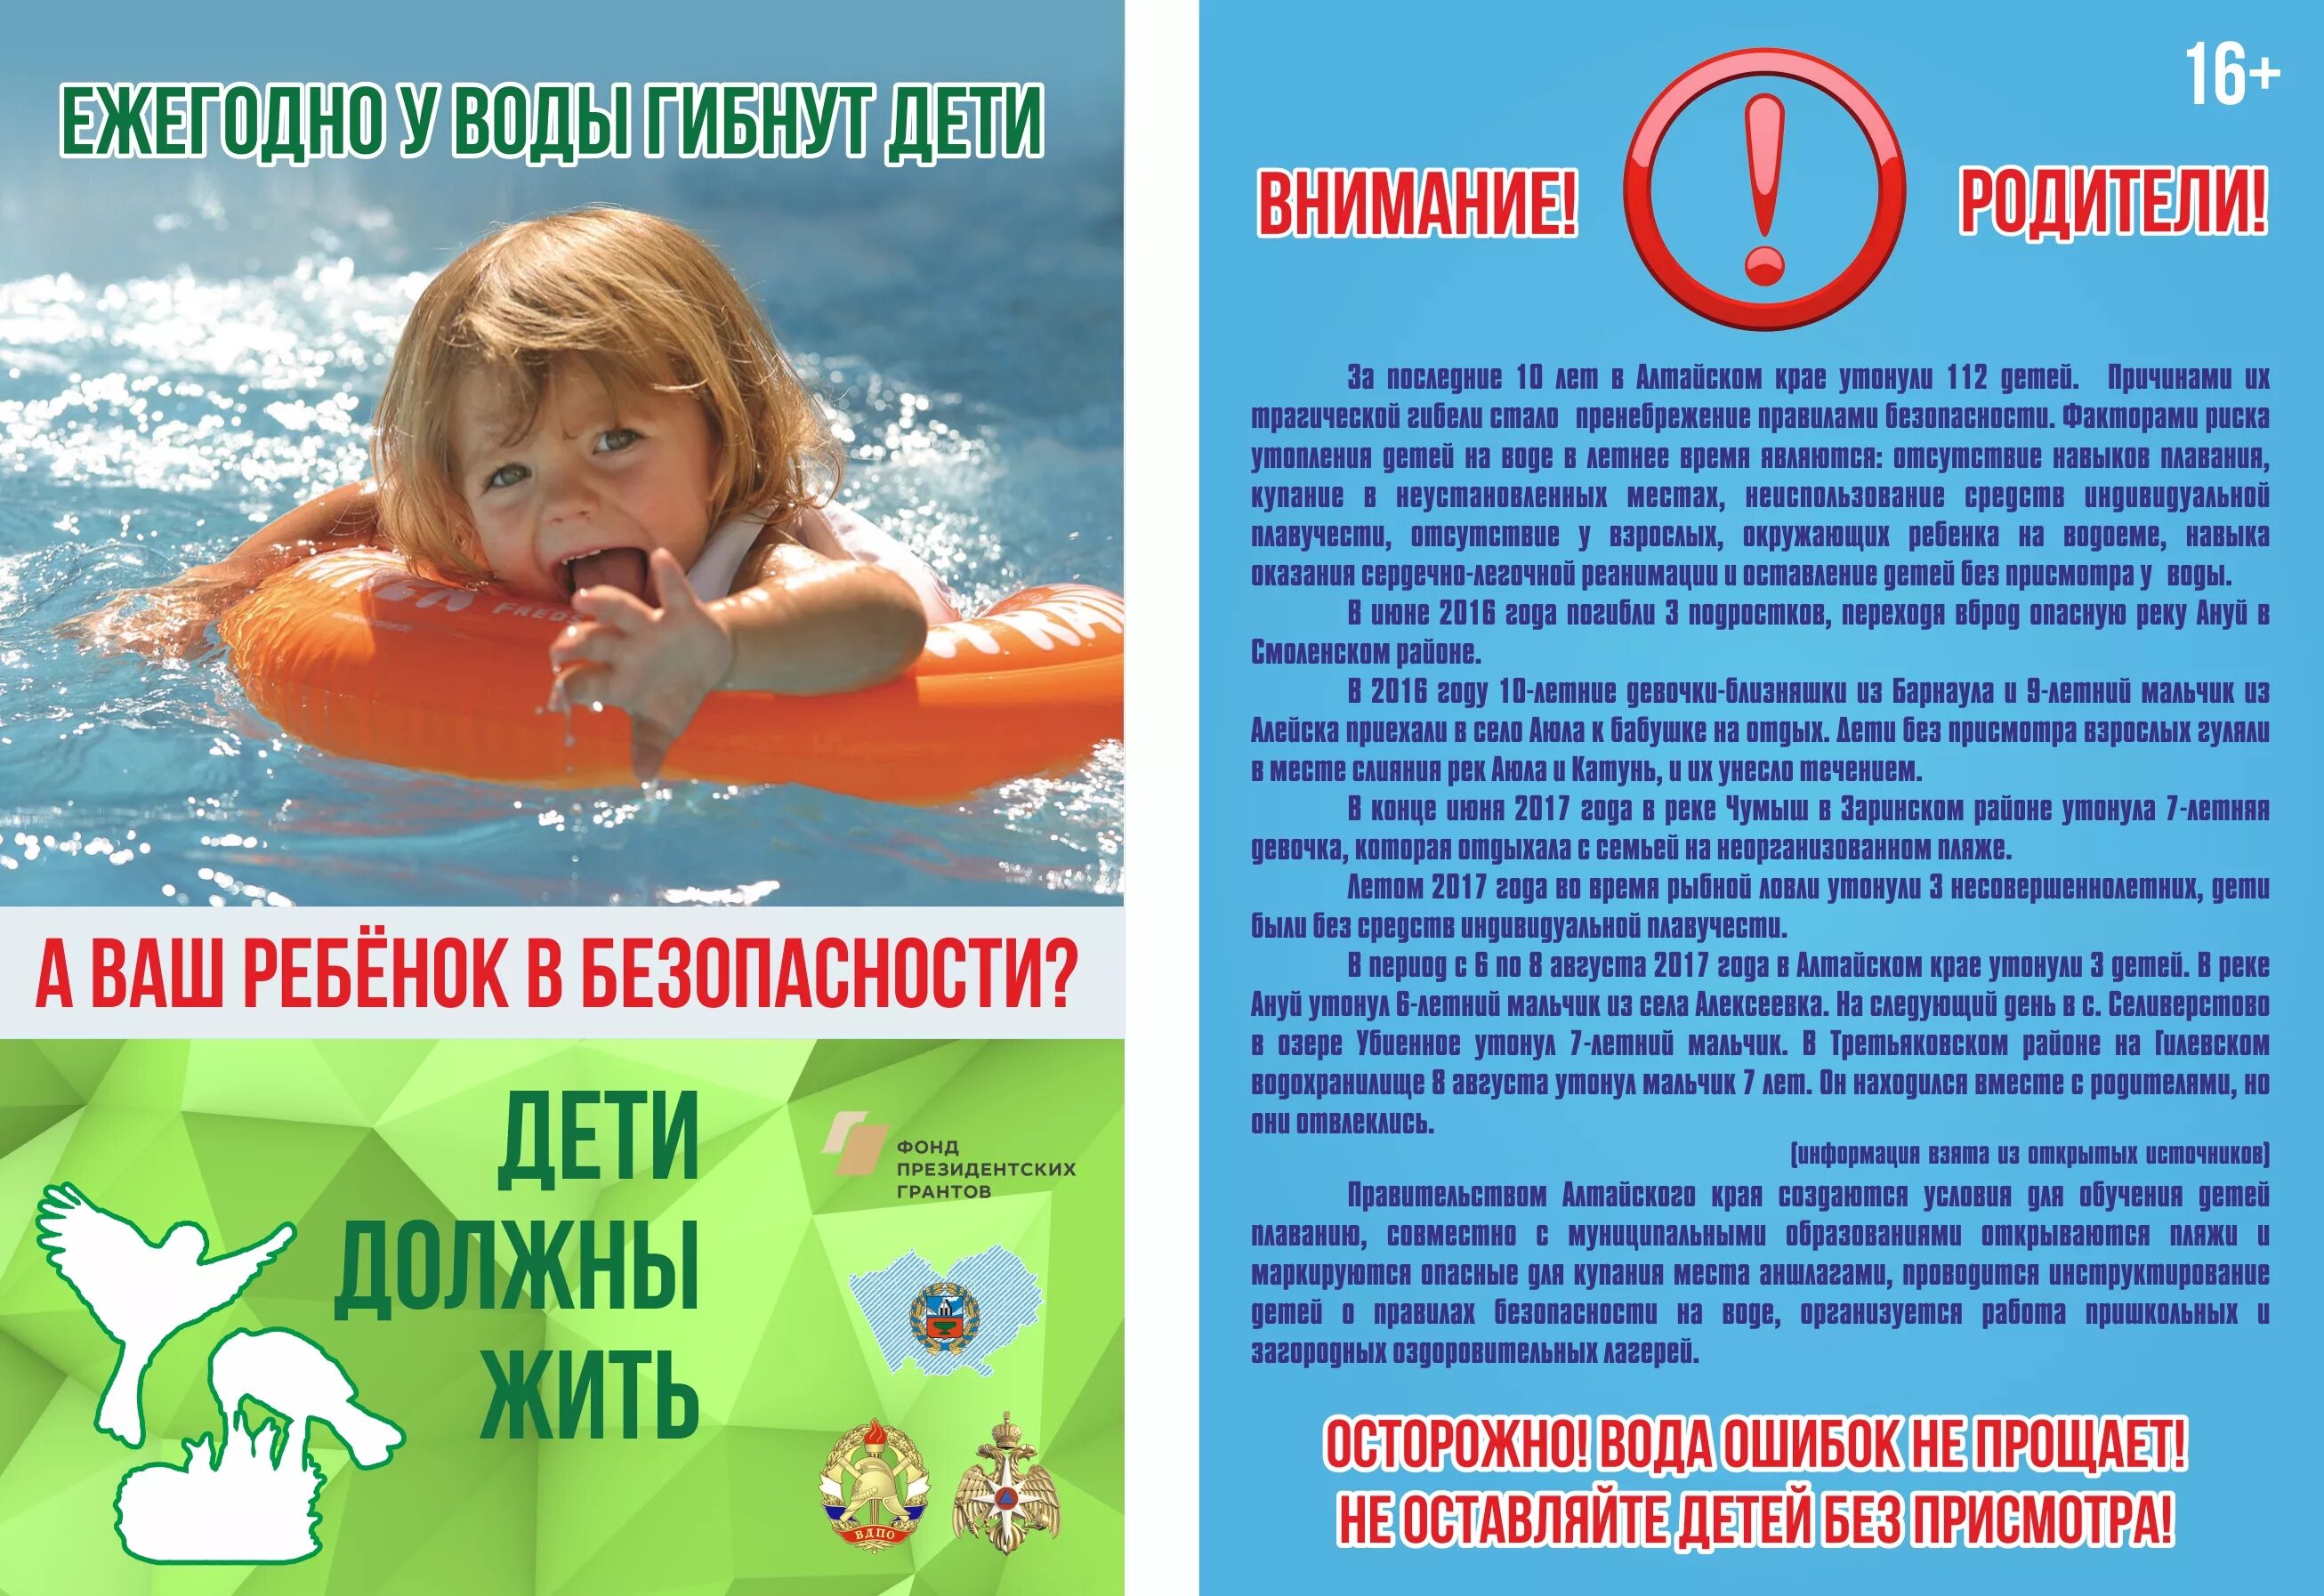 Безопасность на водоемах летом для детей. Безопасность на вордоемахдля детей. Безопасность на воде для детей. Безопасность детей на водоемах в летний период. Безопасное купание